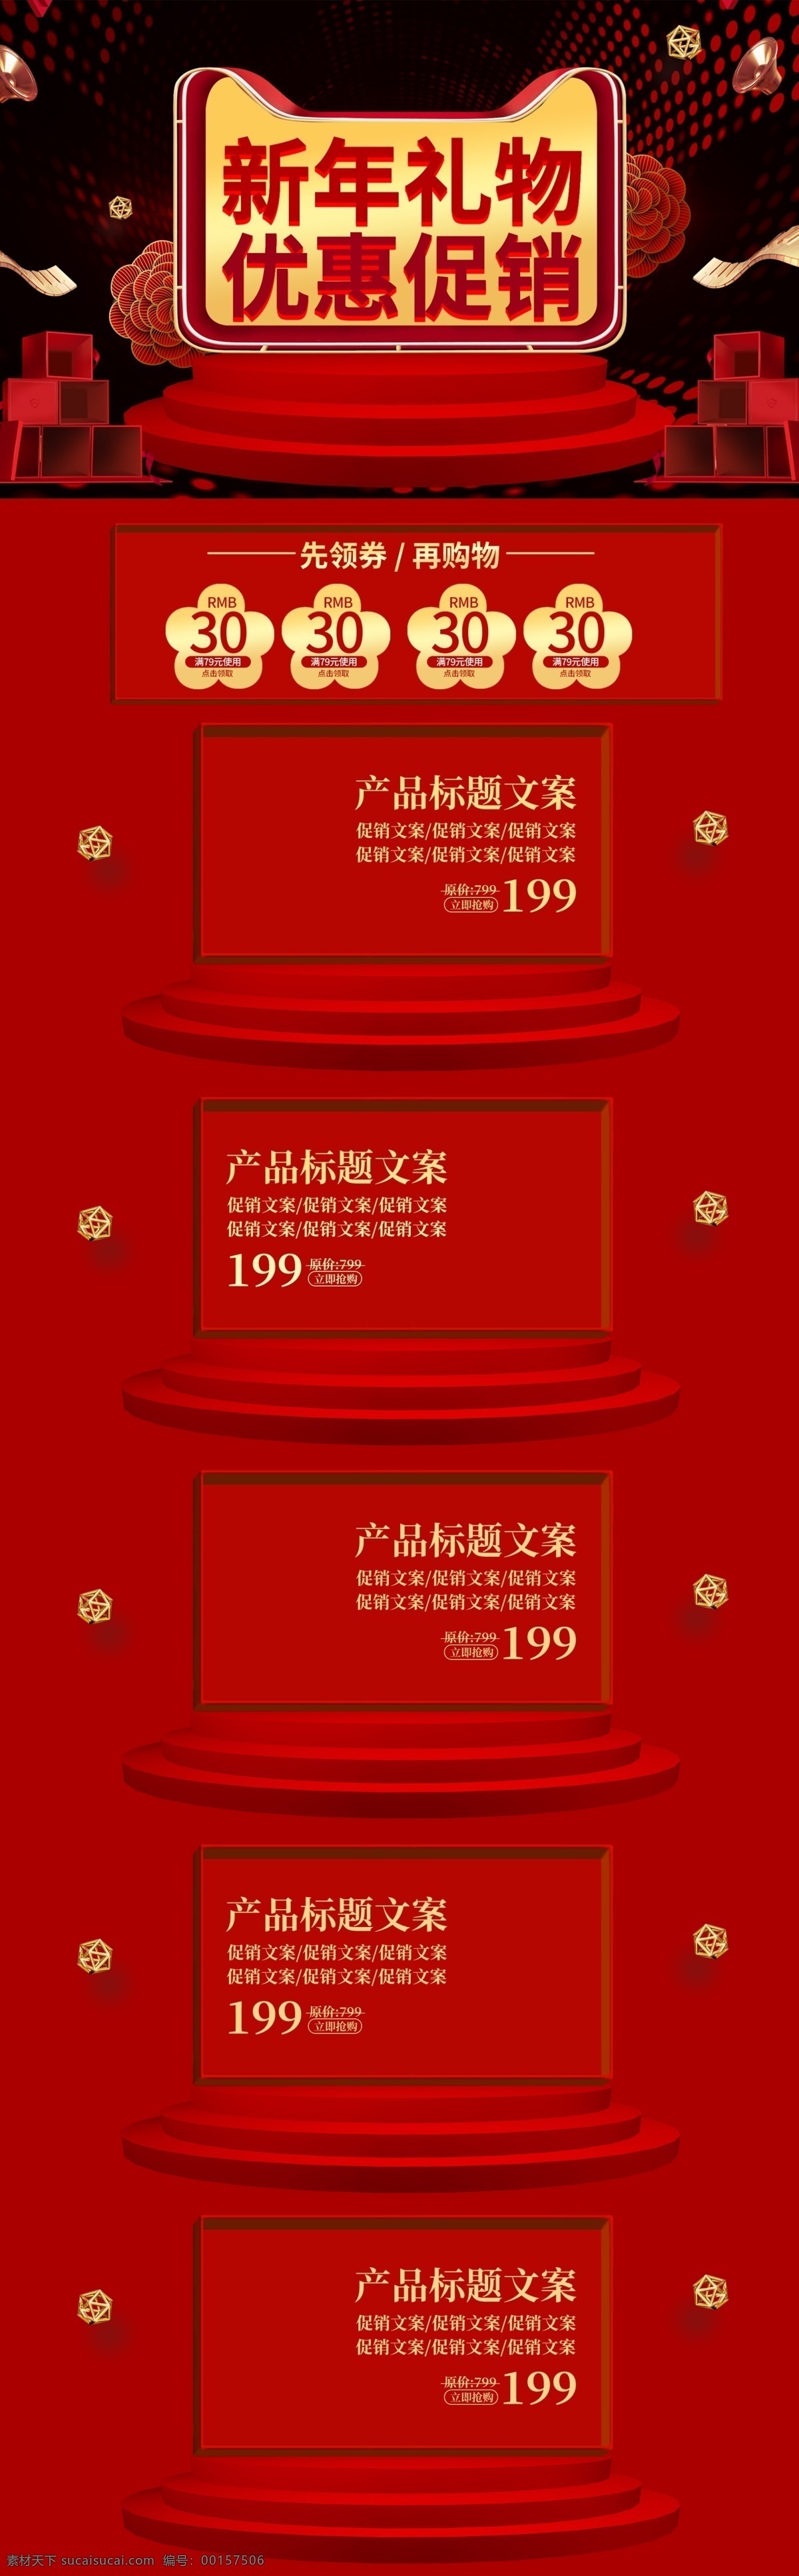 微 立体 中国 风 新年 礼物 优惠 促销活动 模板 首页 促销 天猫 微立体 2019 电商 活动 淘宝